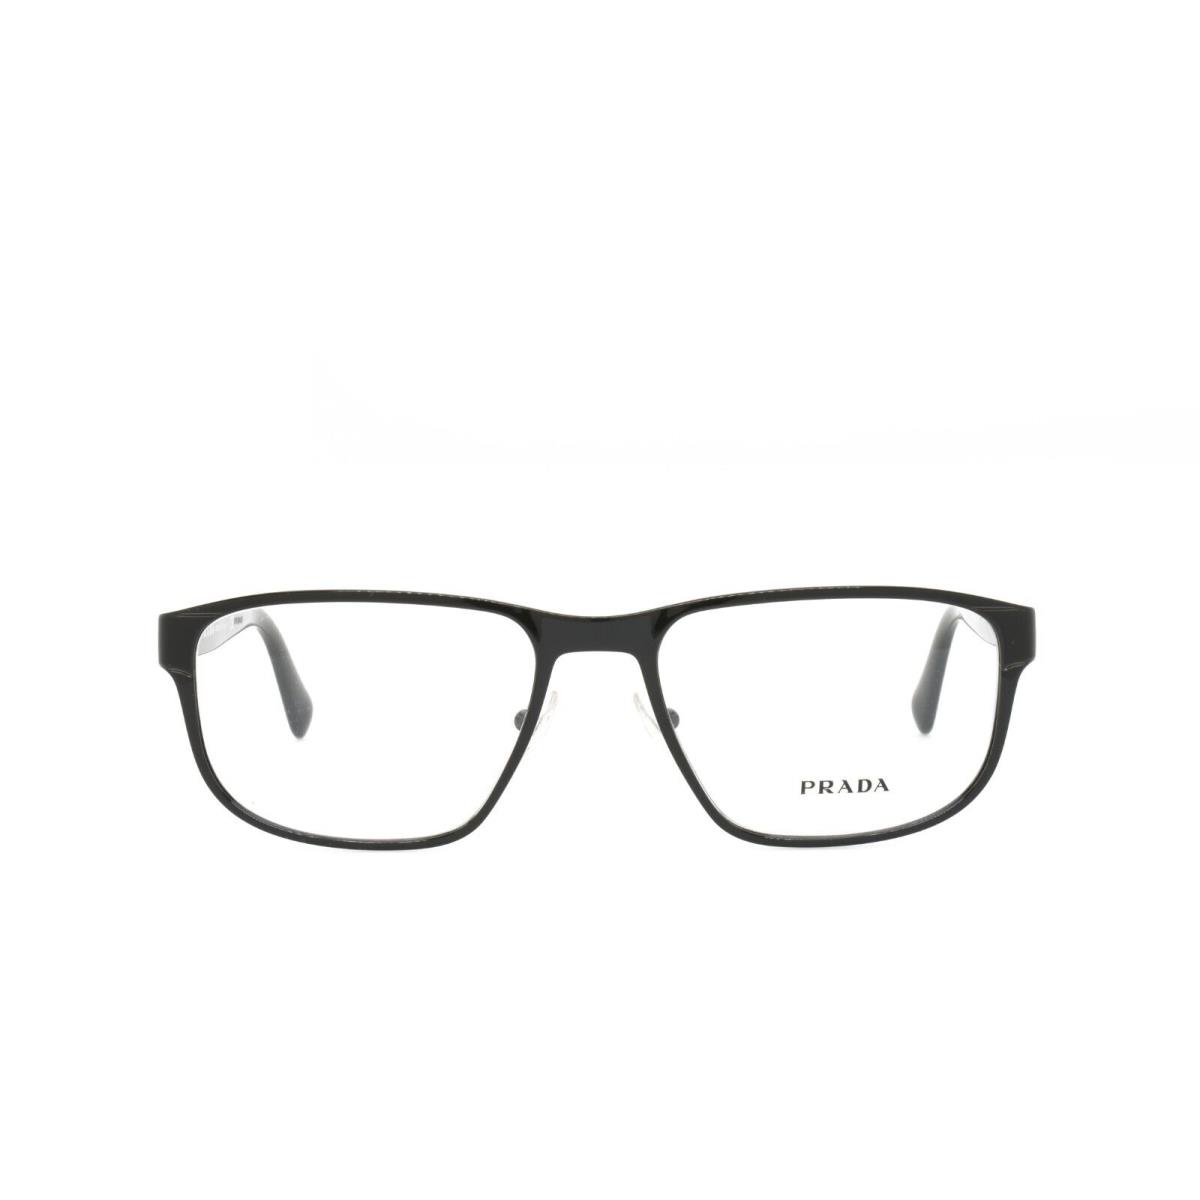 Prada 56S 7AX-1O1 53-17-140 Black Eyeglasses